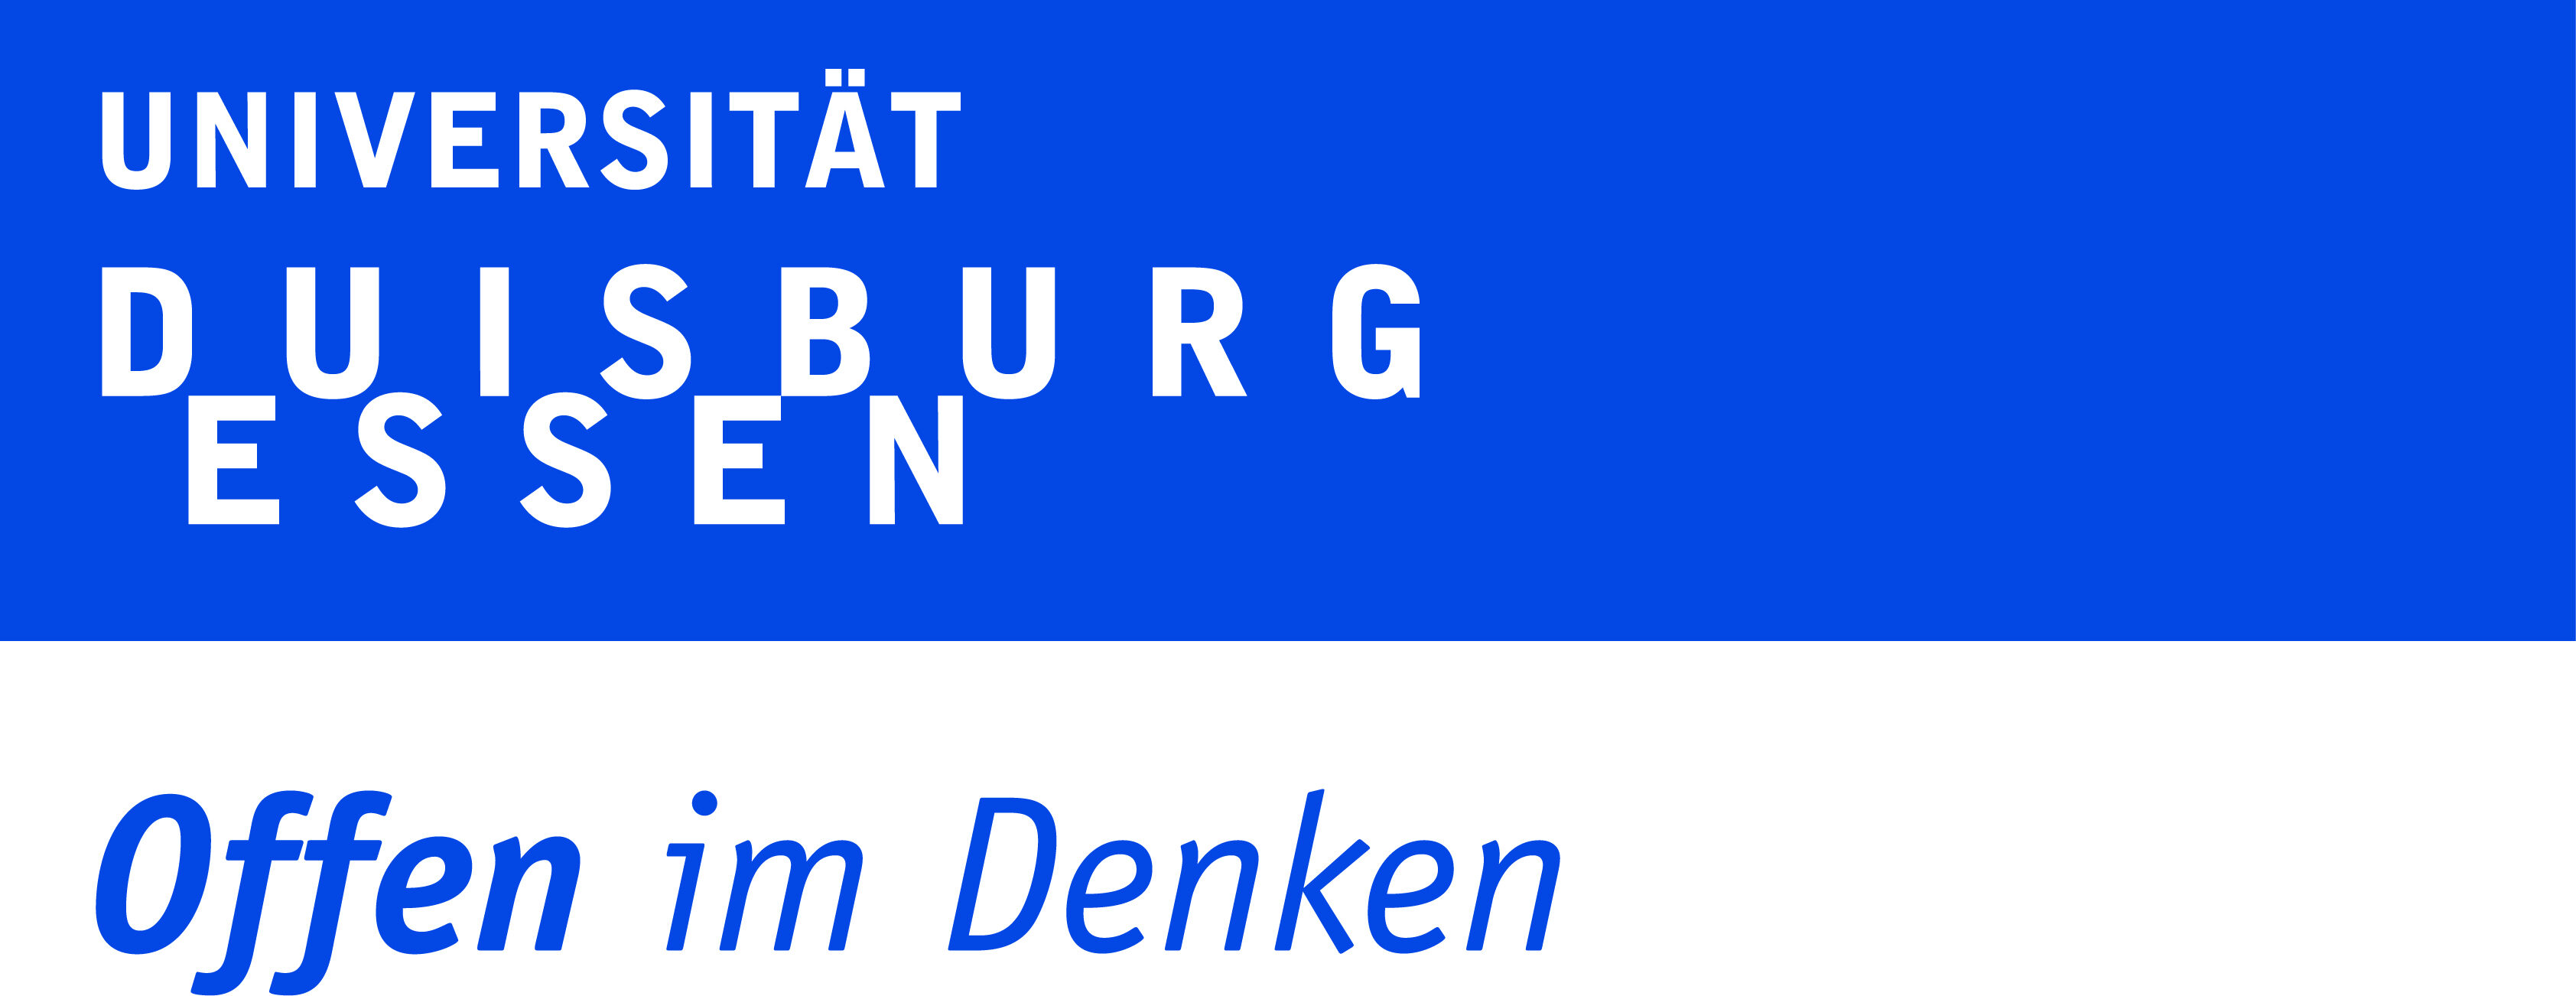 Logo der Universität Duisburg Essen als Wortmarke - Offen im Denken